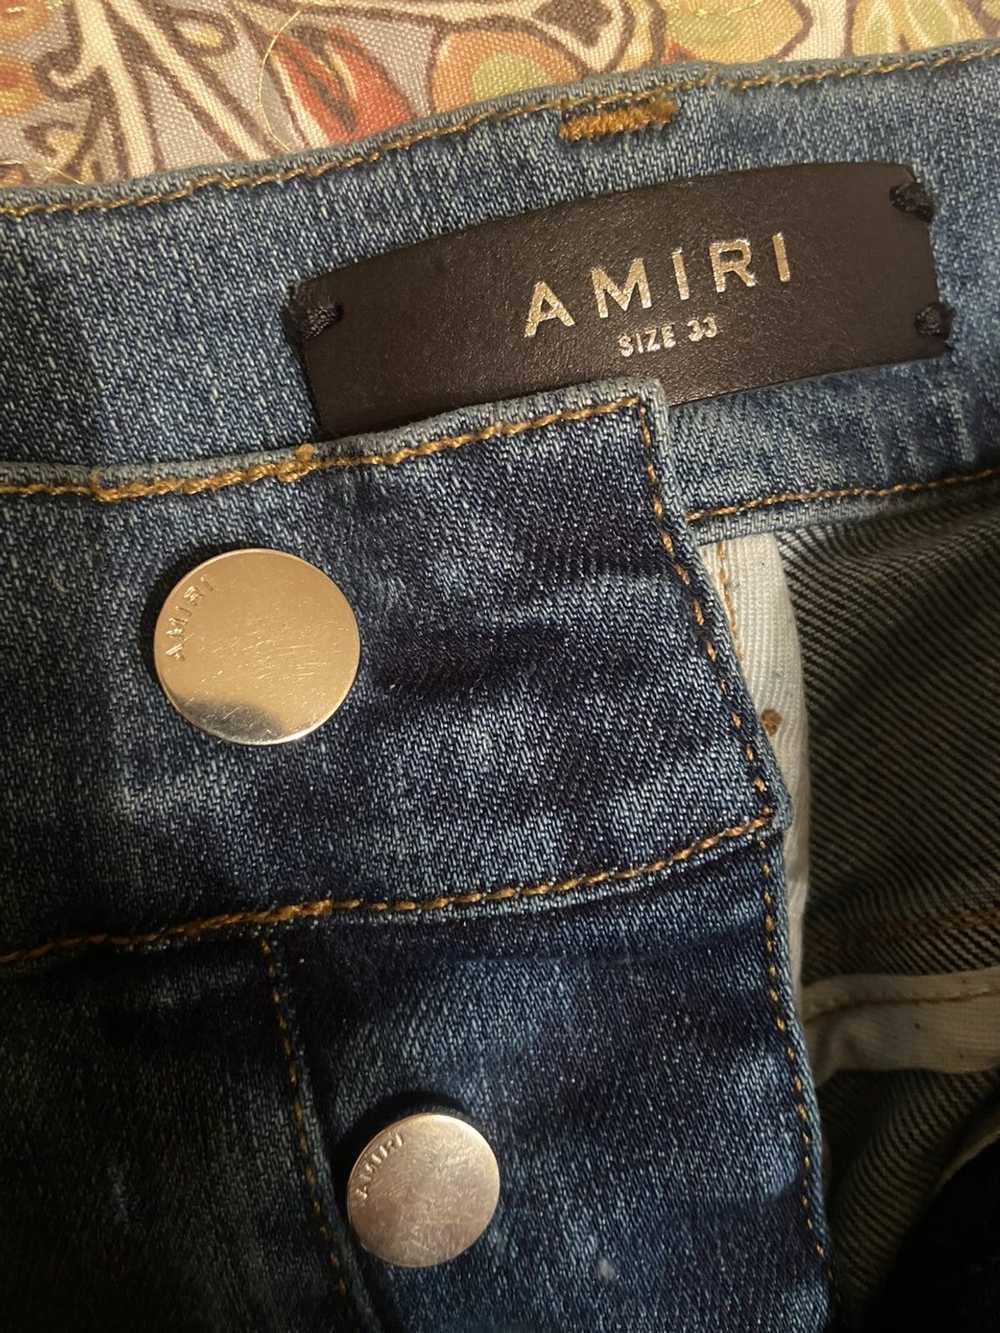 Amiri Amiri distressed leather skinny jeans - image 3